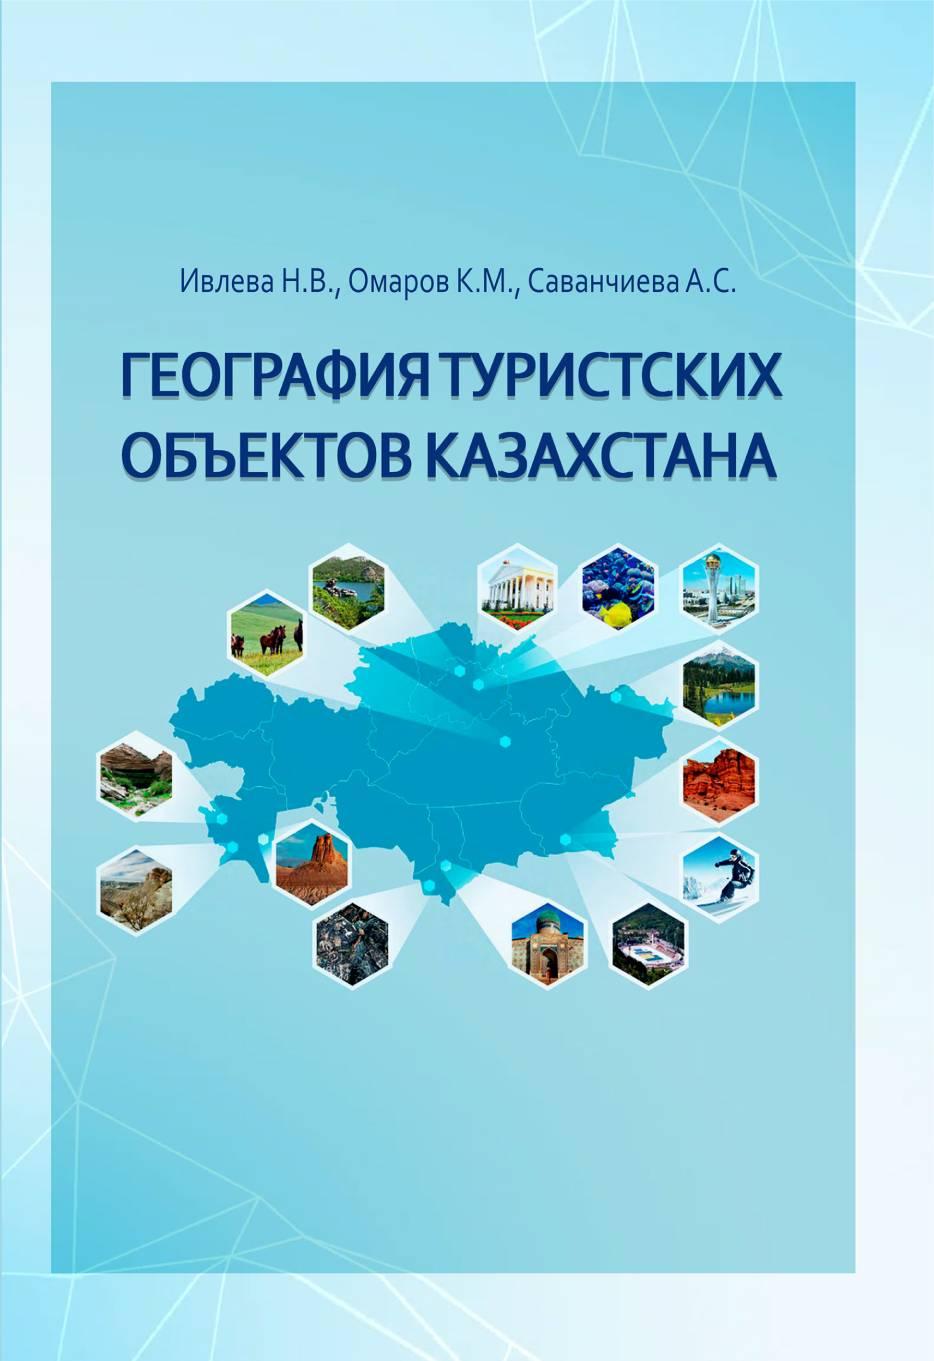 География туристских объектов Казахстана учебноепособие.